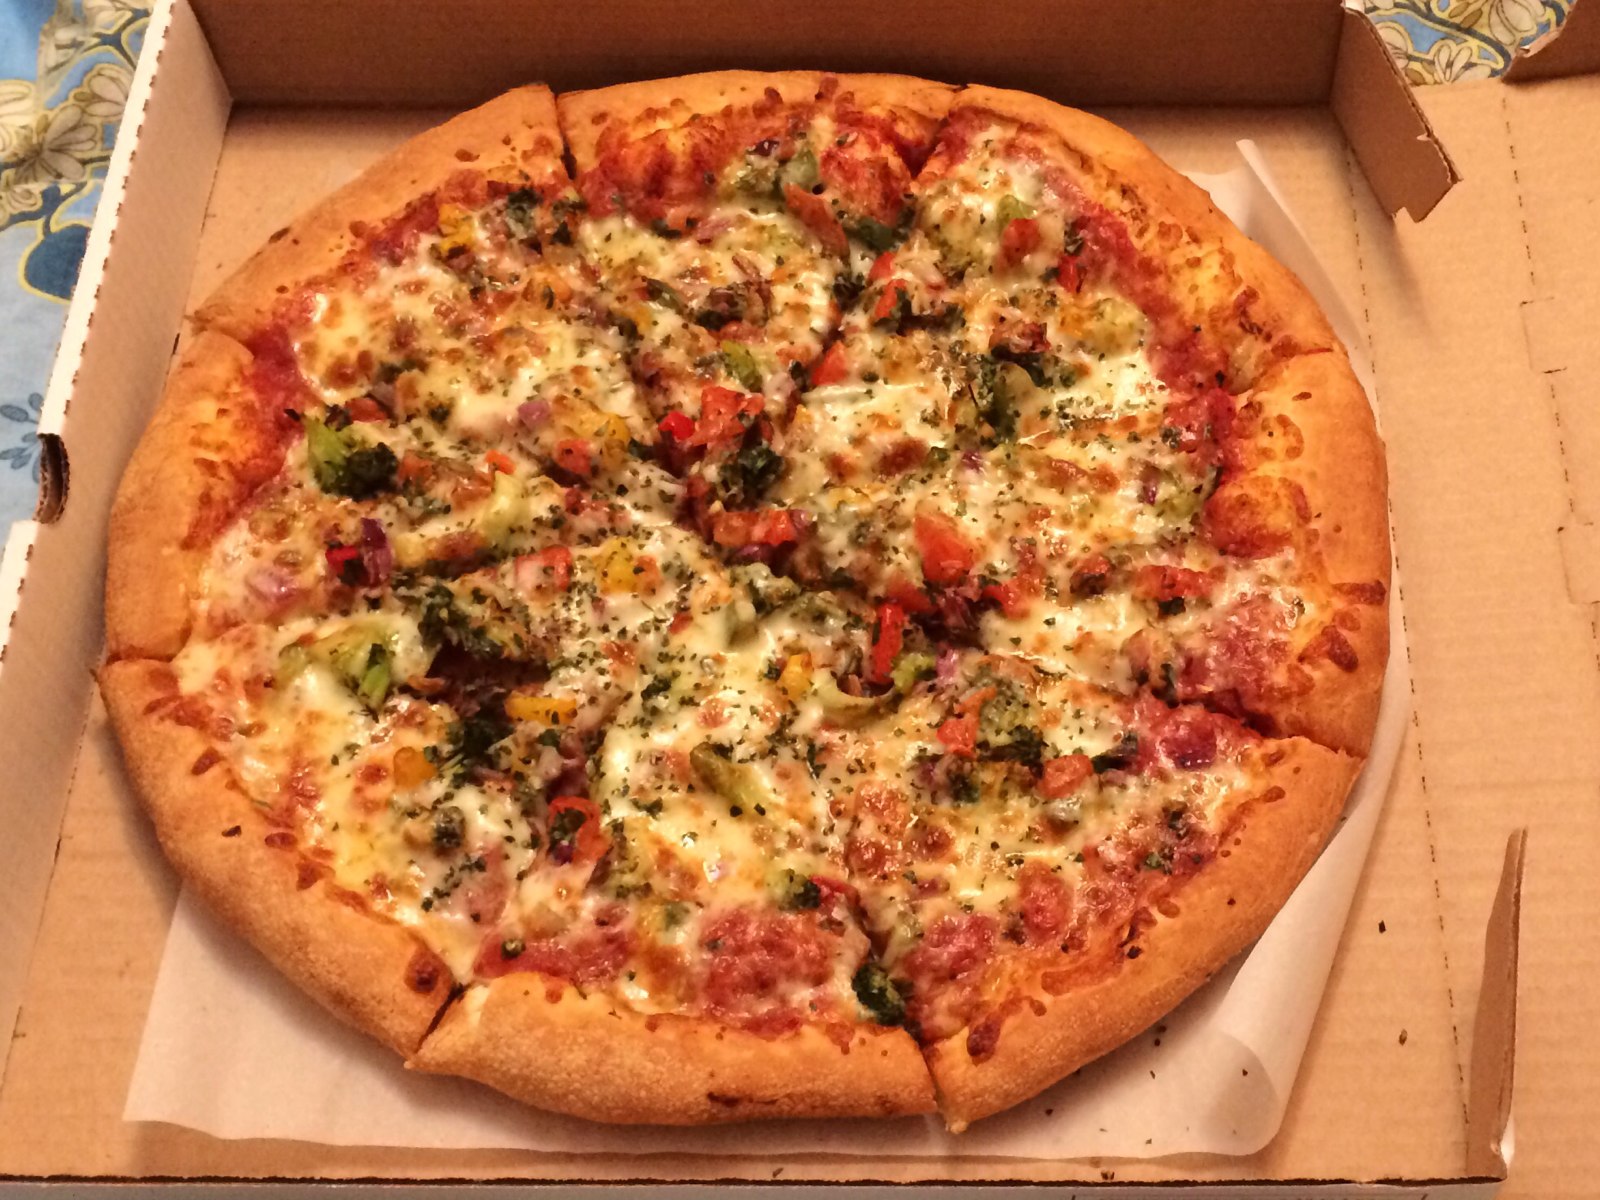 Доставка пиццы на дом алло